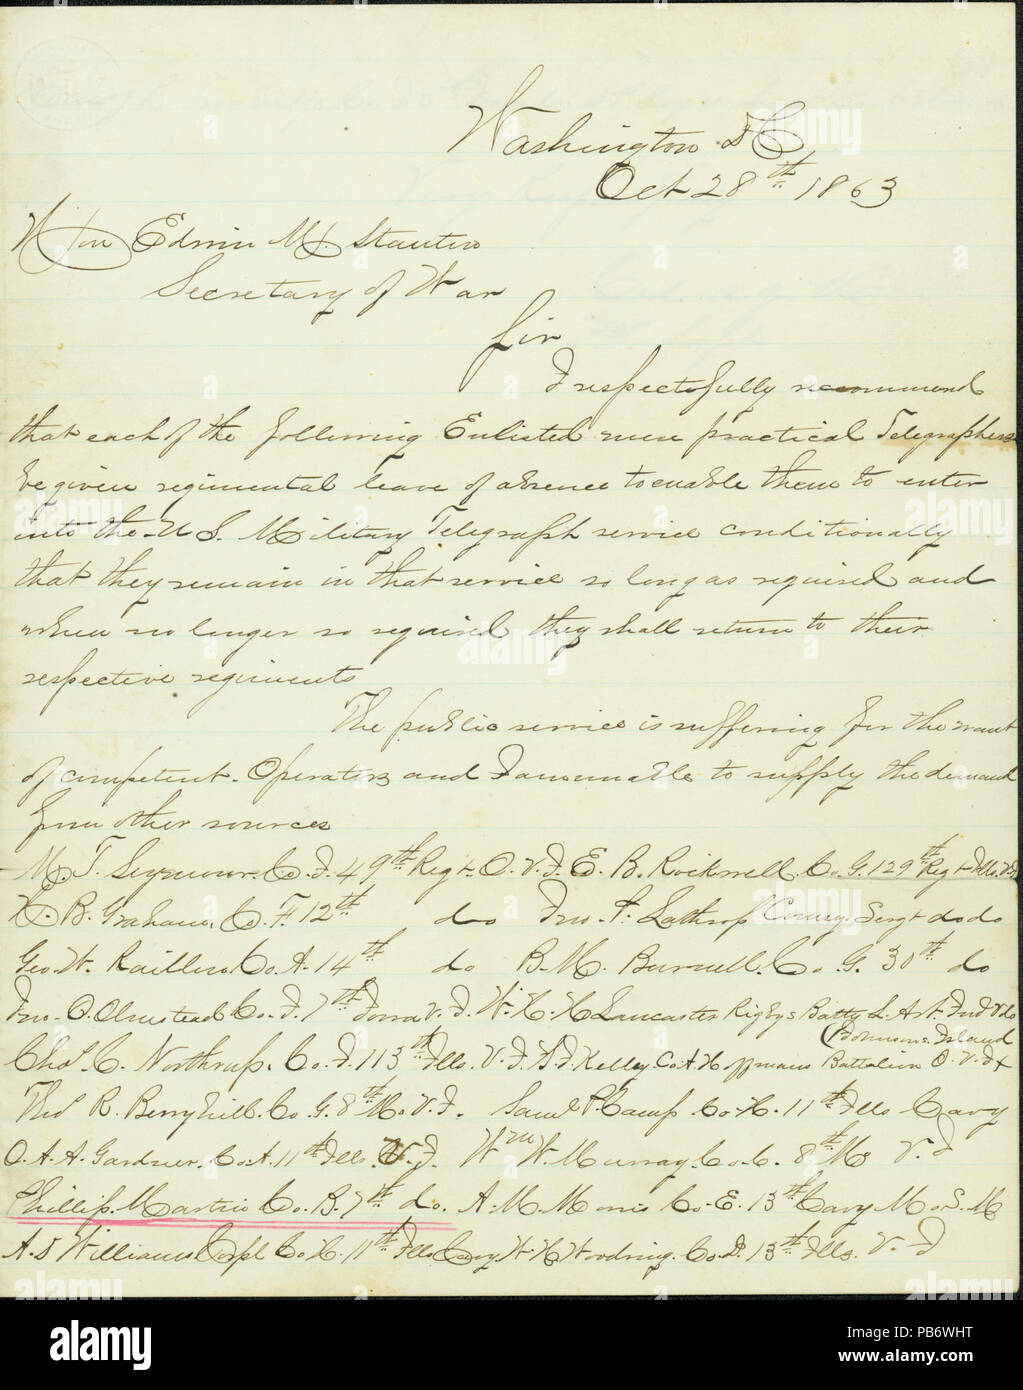 906 Lettre signée Colonel Agille, Washington, D.C., pour Edwin M. Stanton, secrétaire de la guerre, le 28 octobre 1863 Banque D'Images